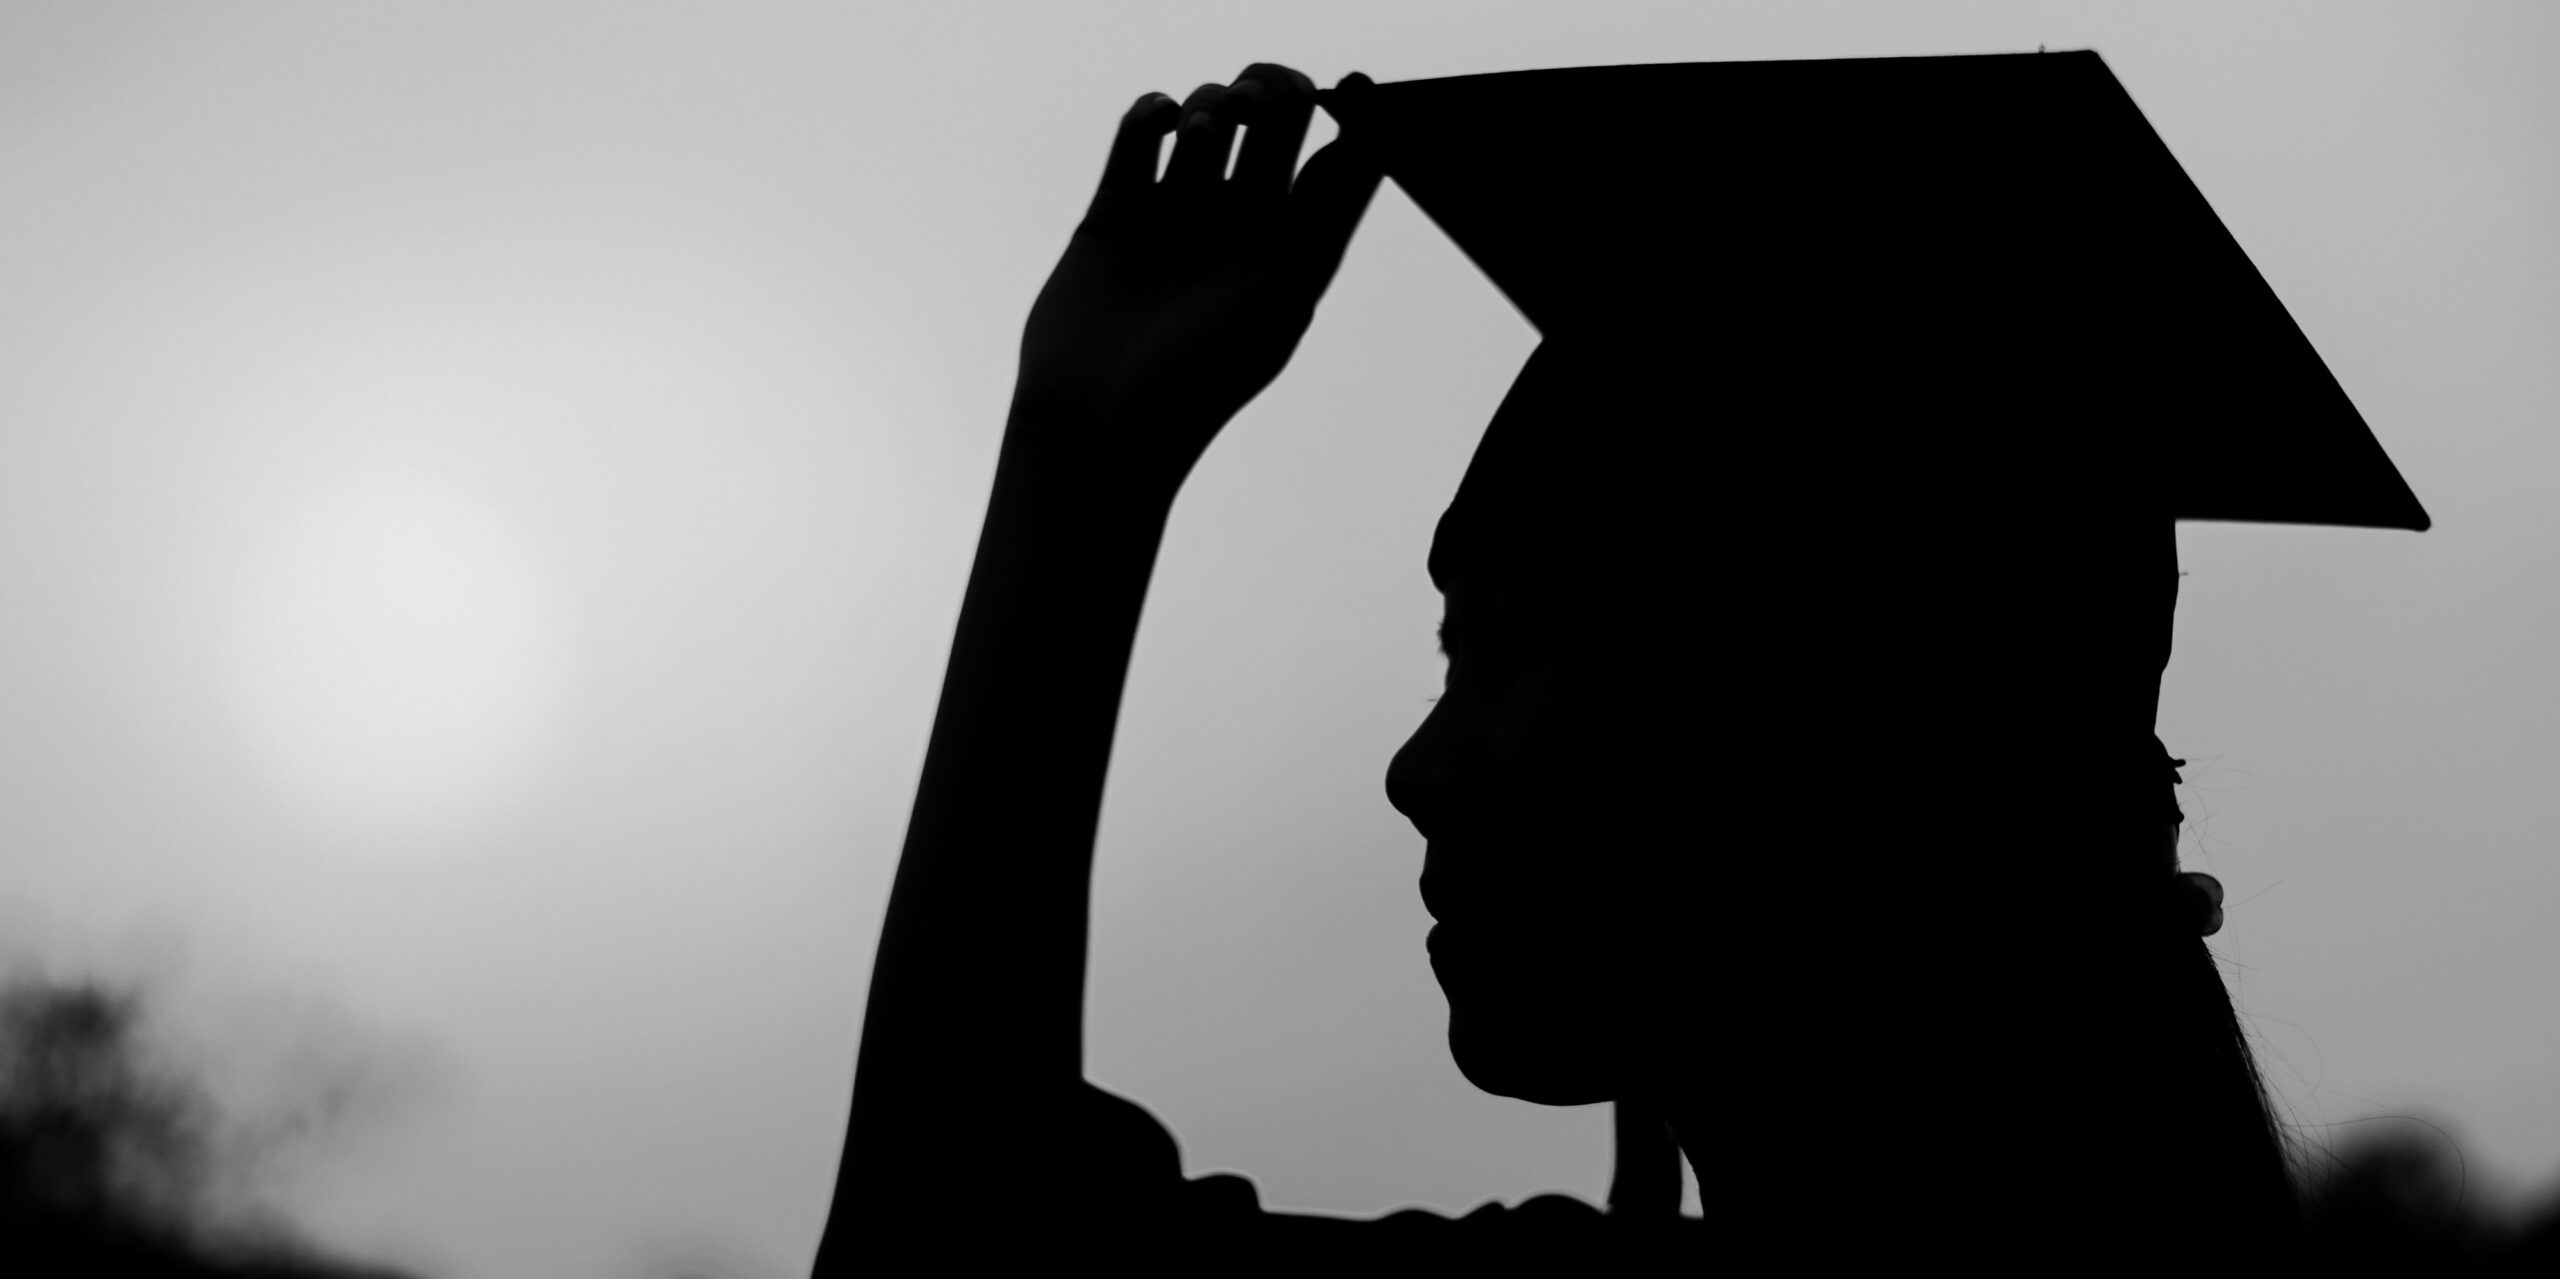 A person wearing a graduation cap